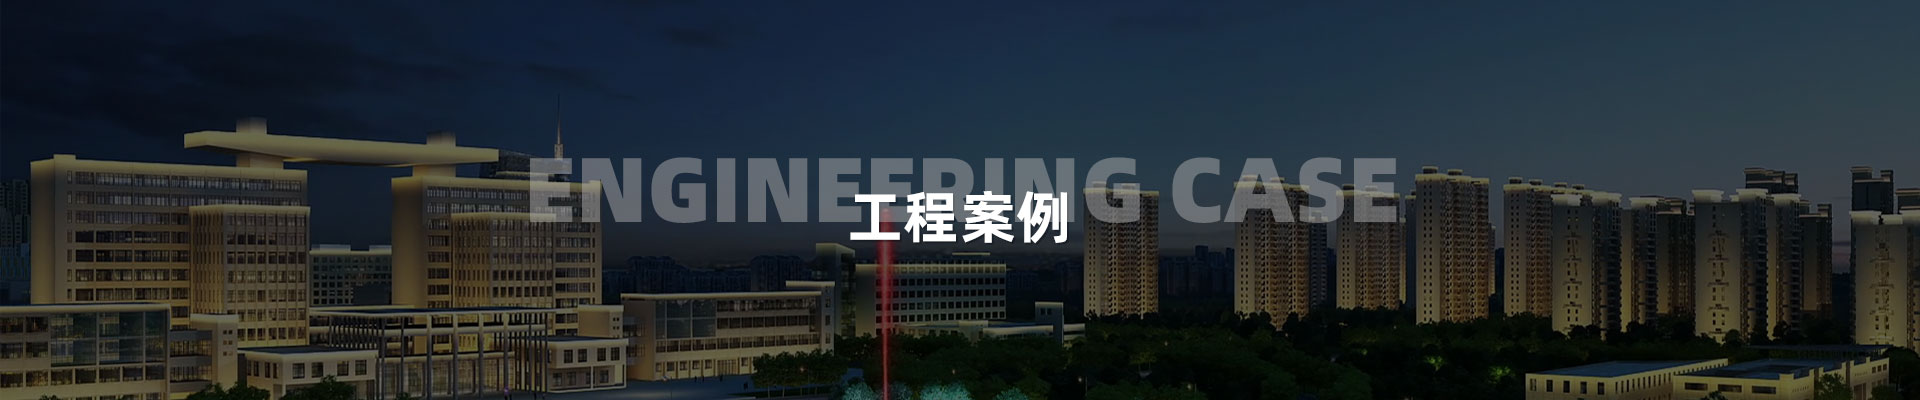 -深圳市中筑景觀亮化照明科技有限公司